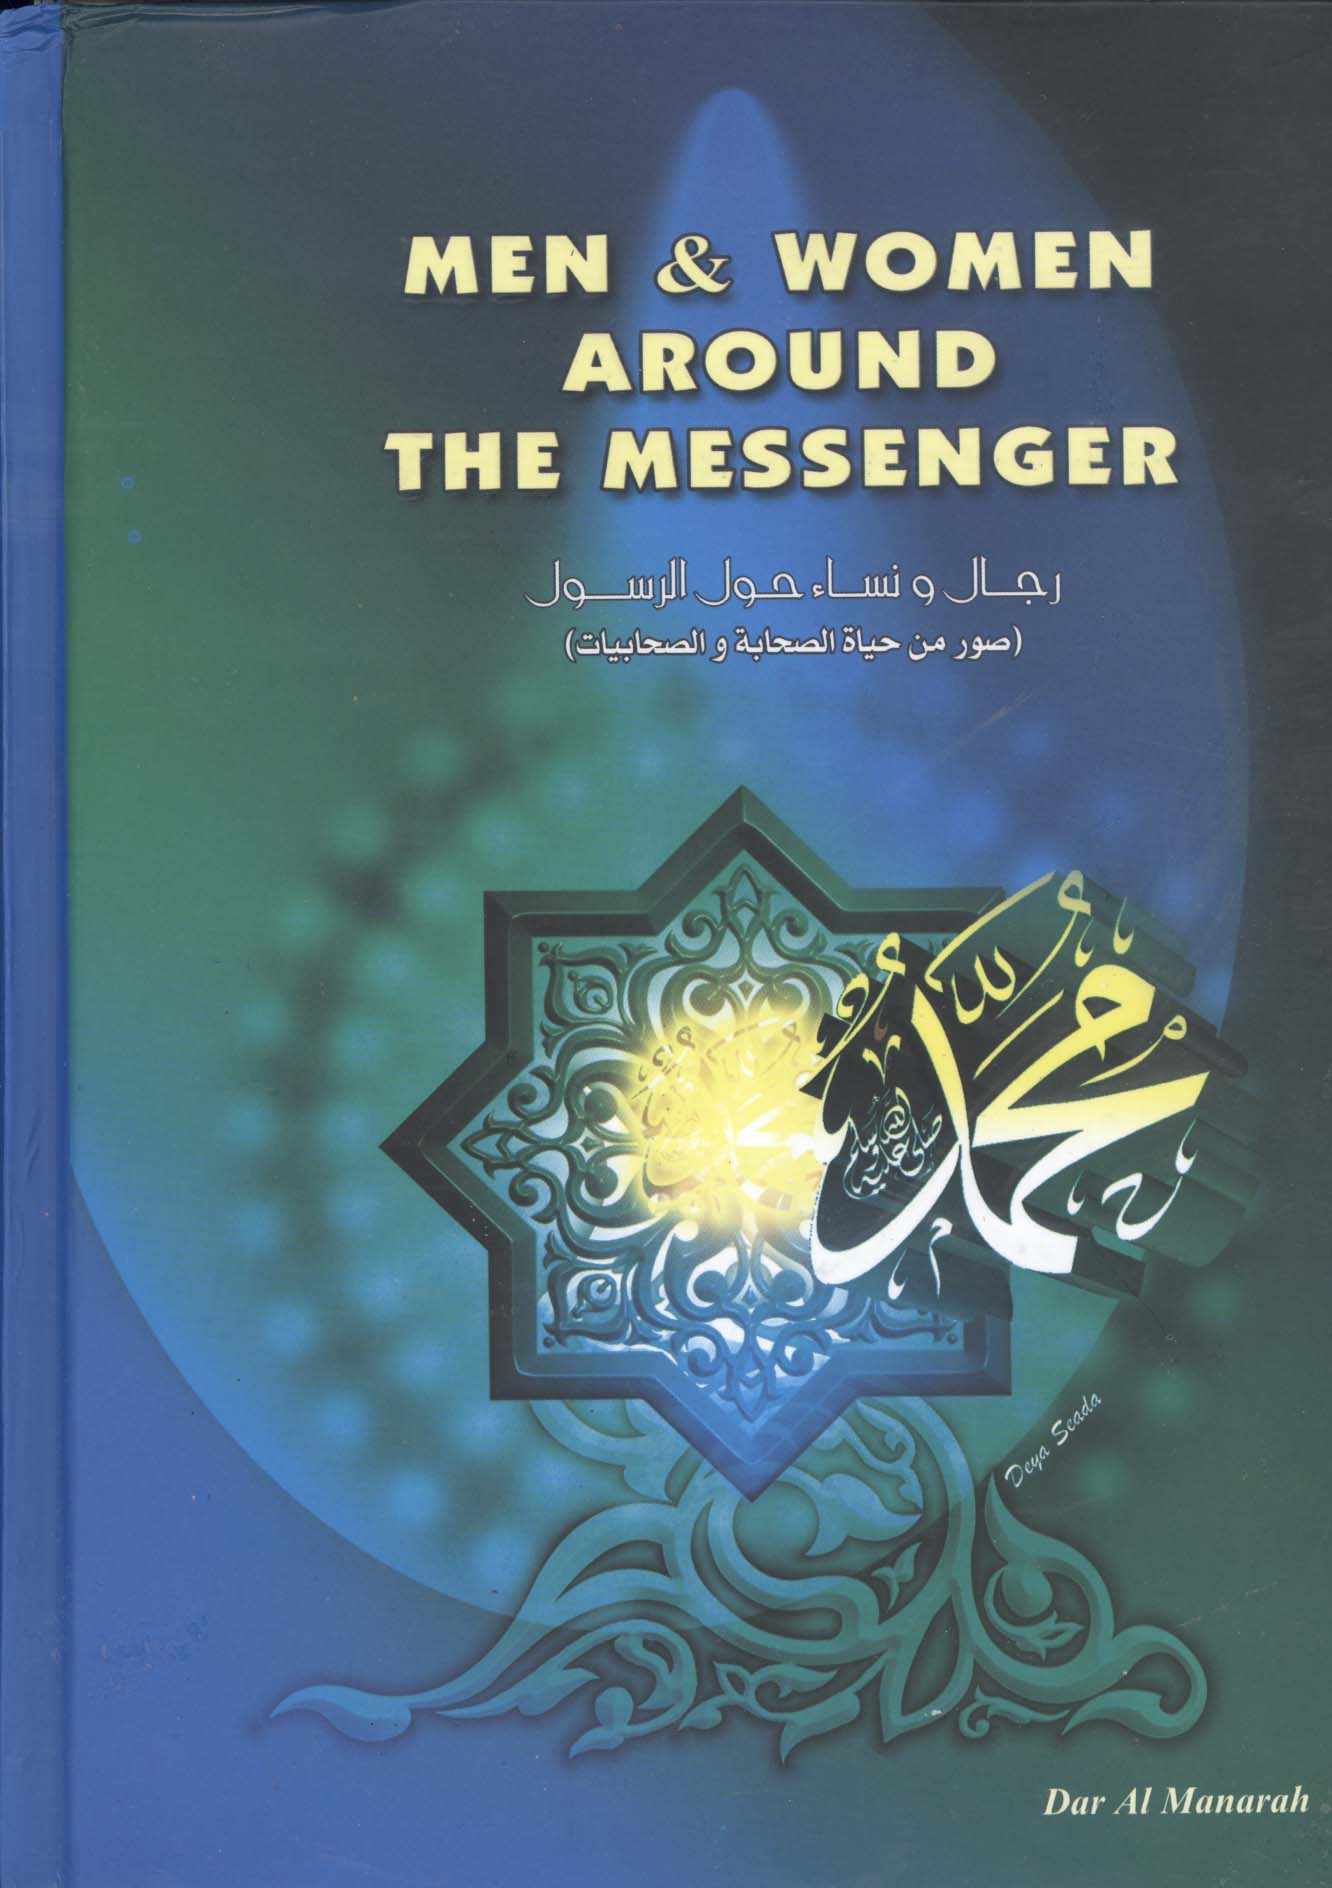 غلاف كتاب men & women around the messenger “peacebe uponn him”